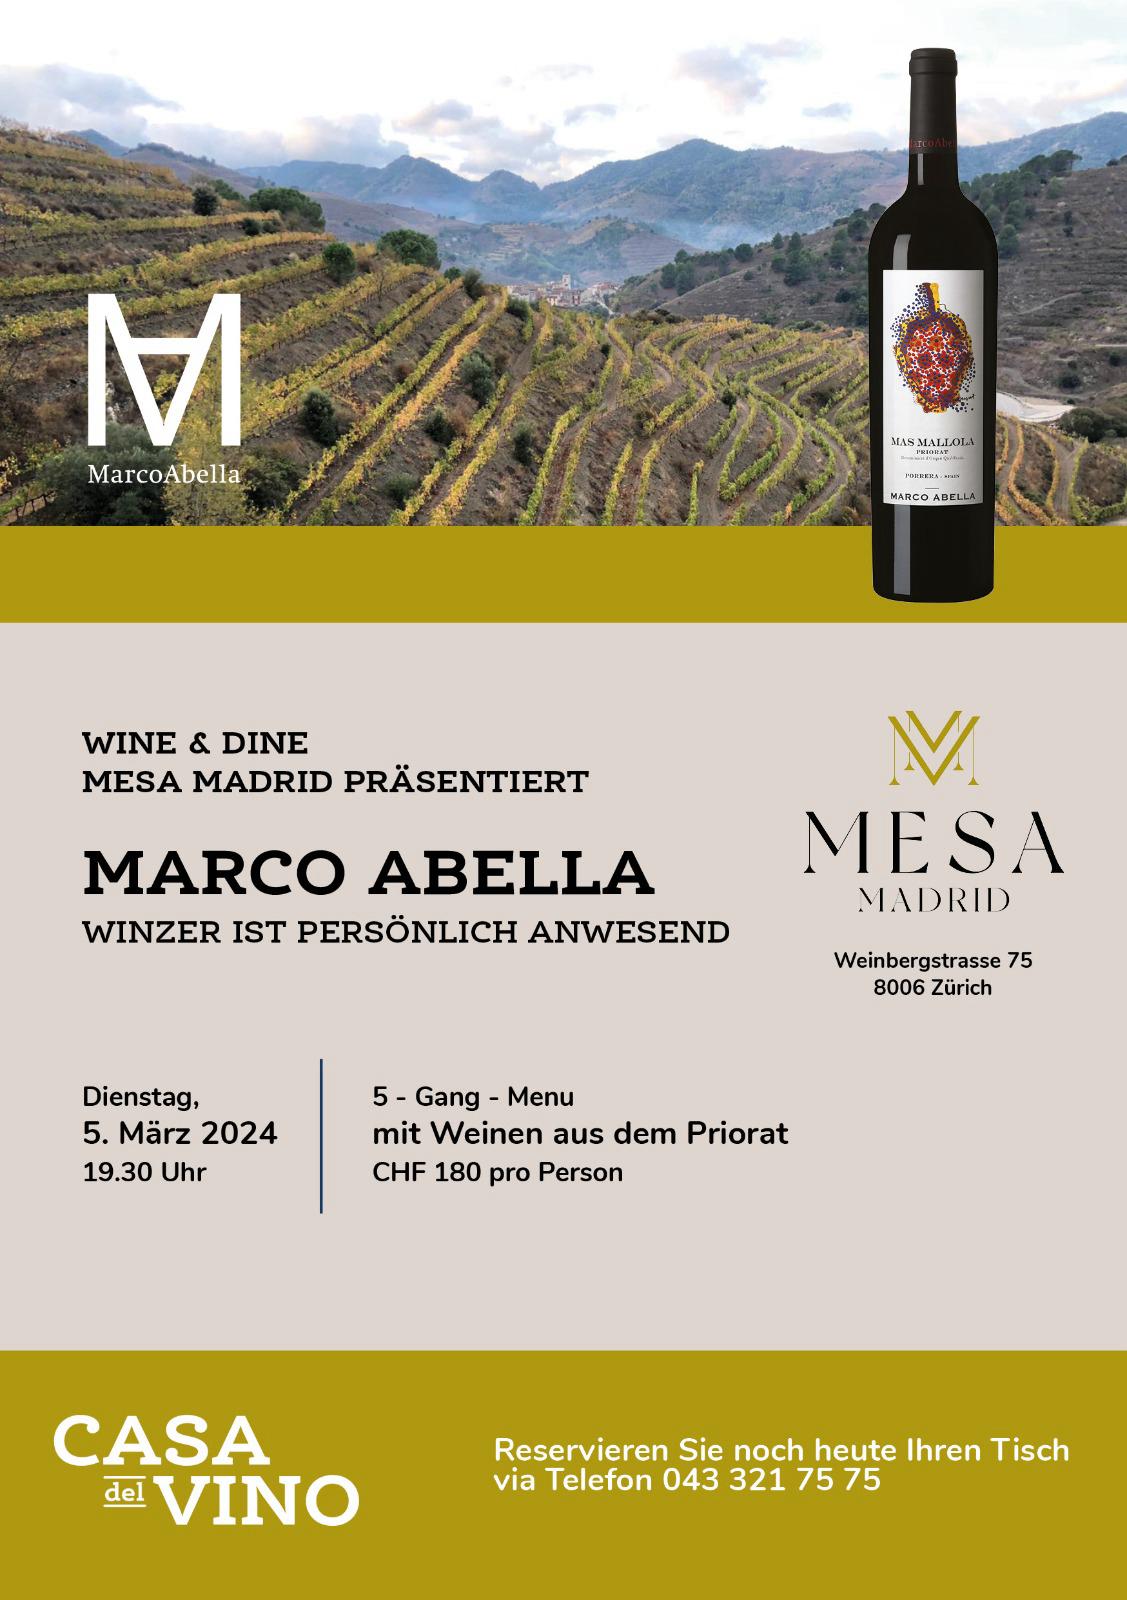 Mesa - Madrid - Wine & Dine